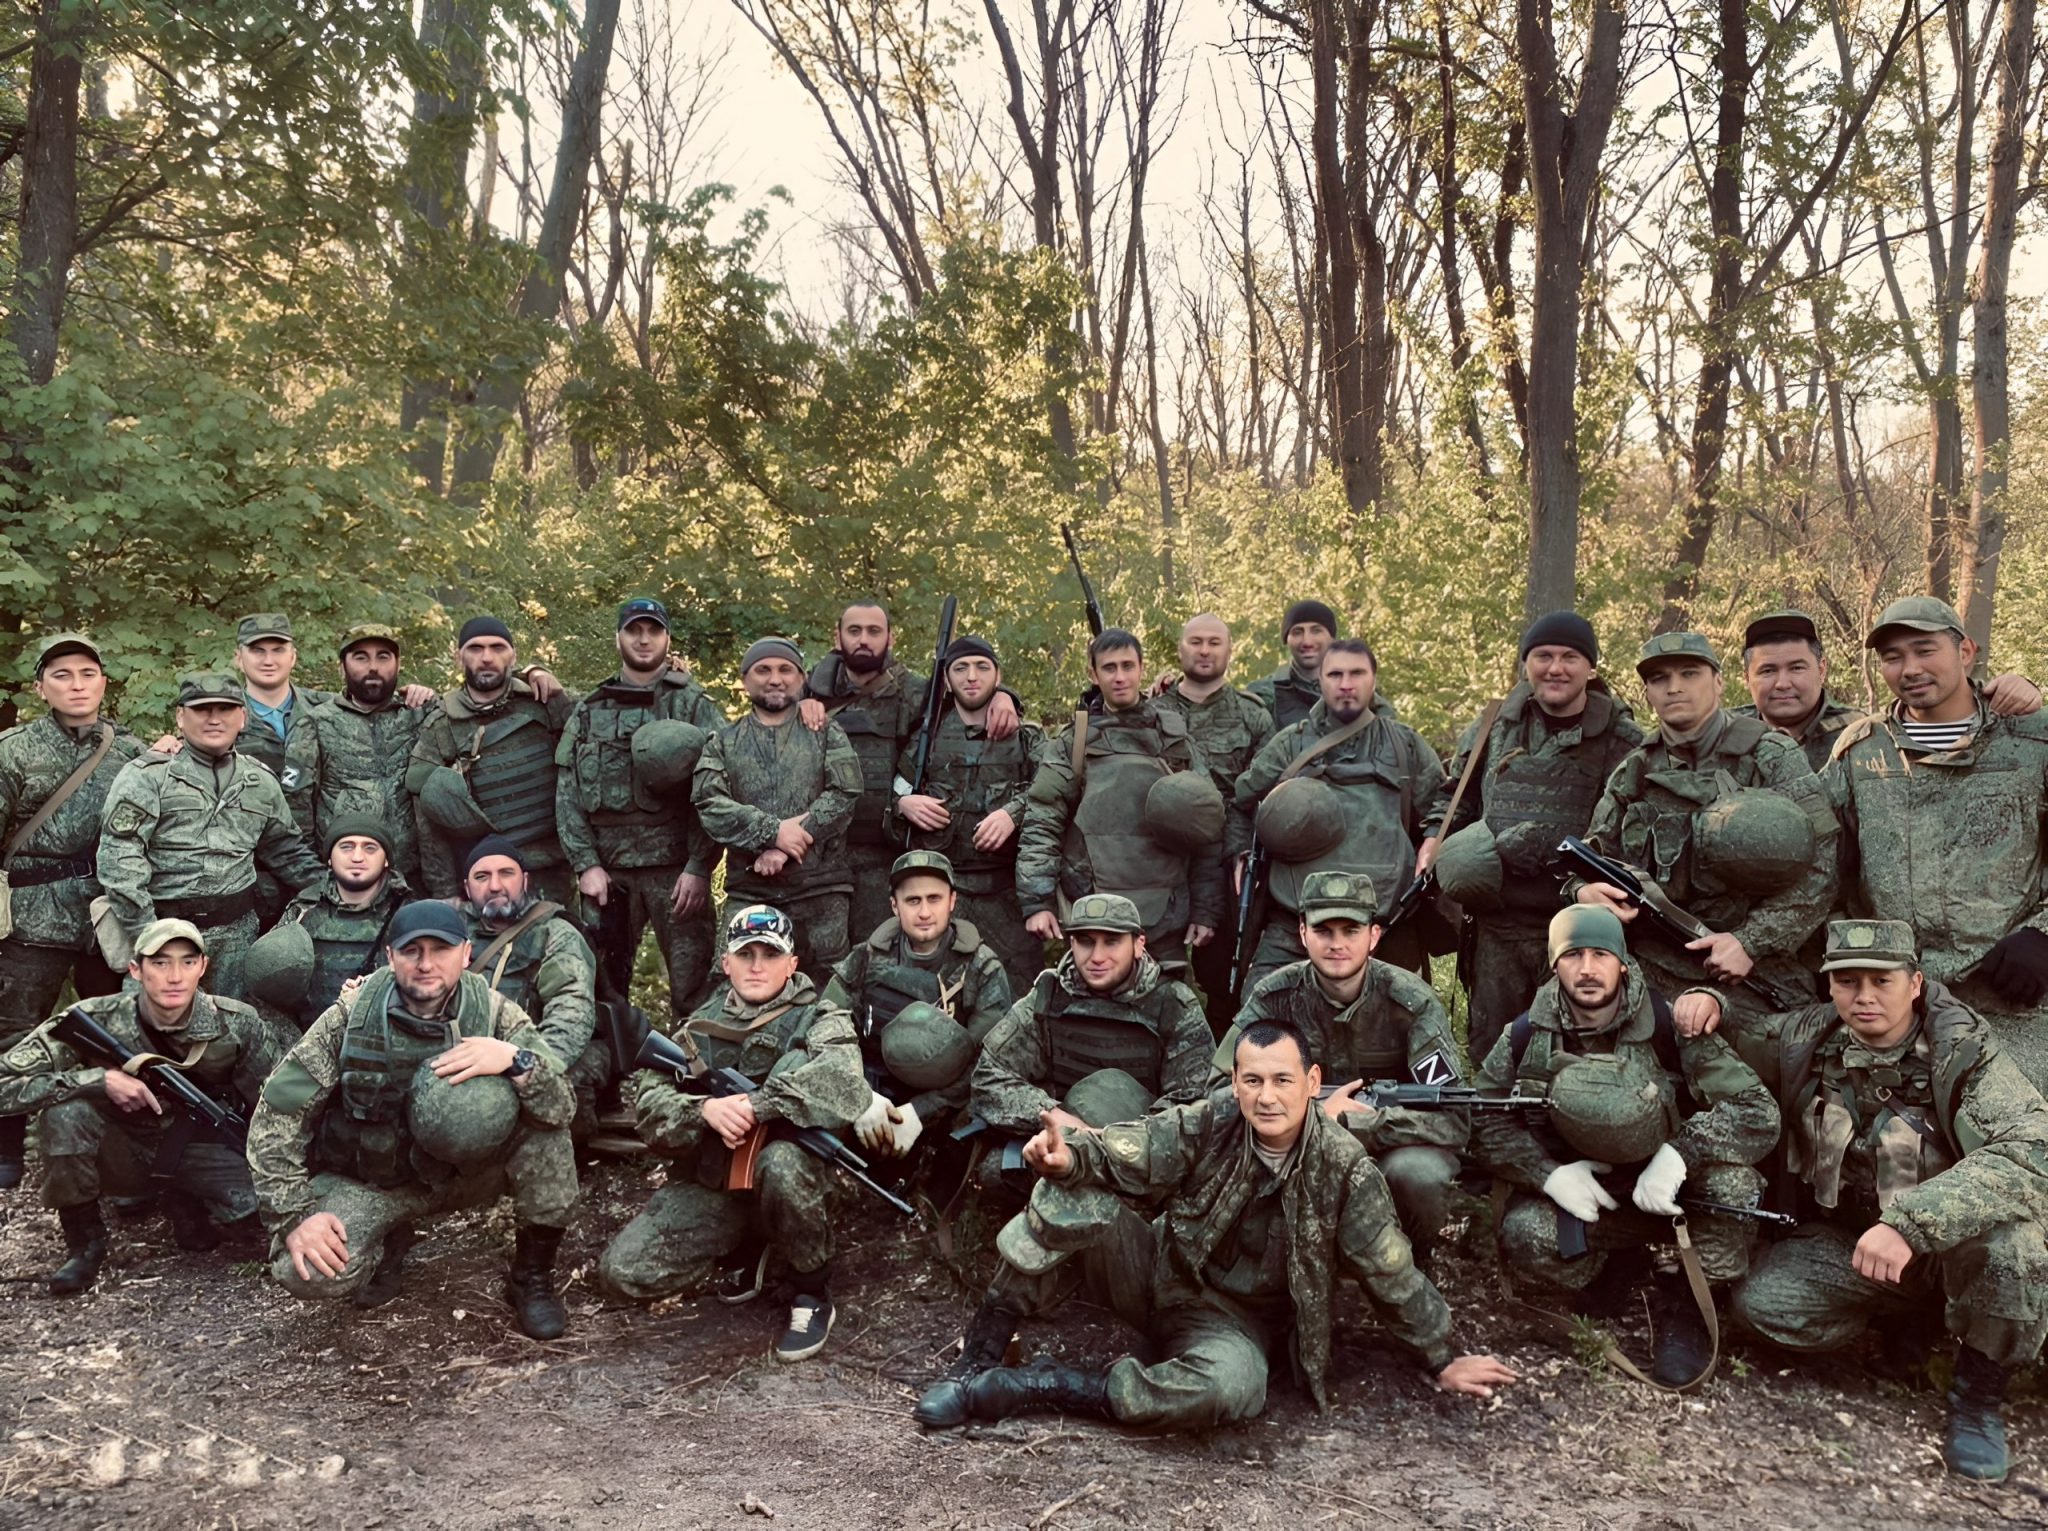 390 полк морской пехоты славянка 1977 1979